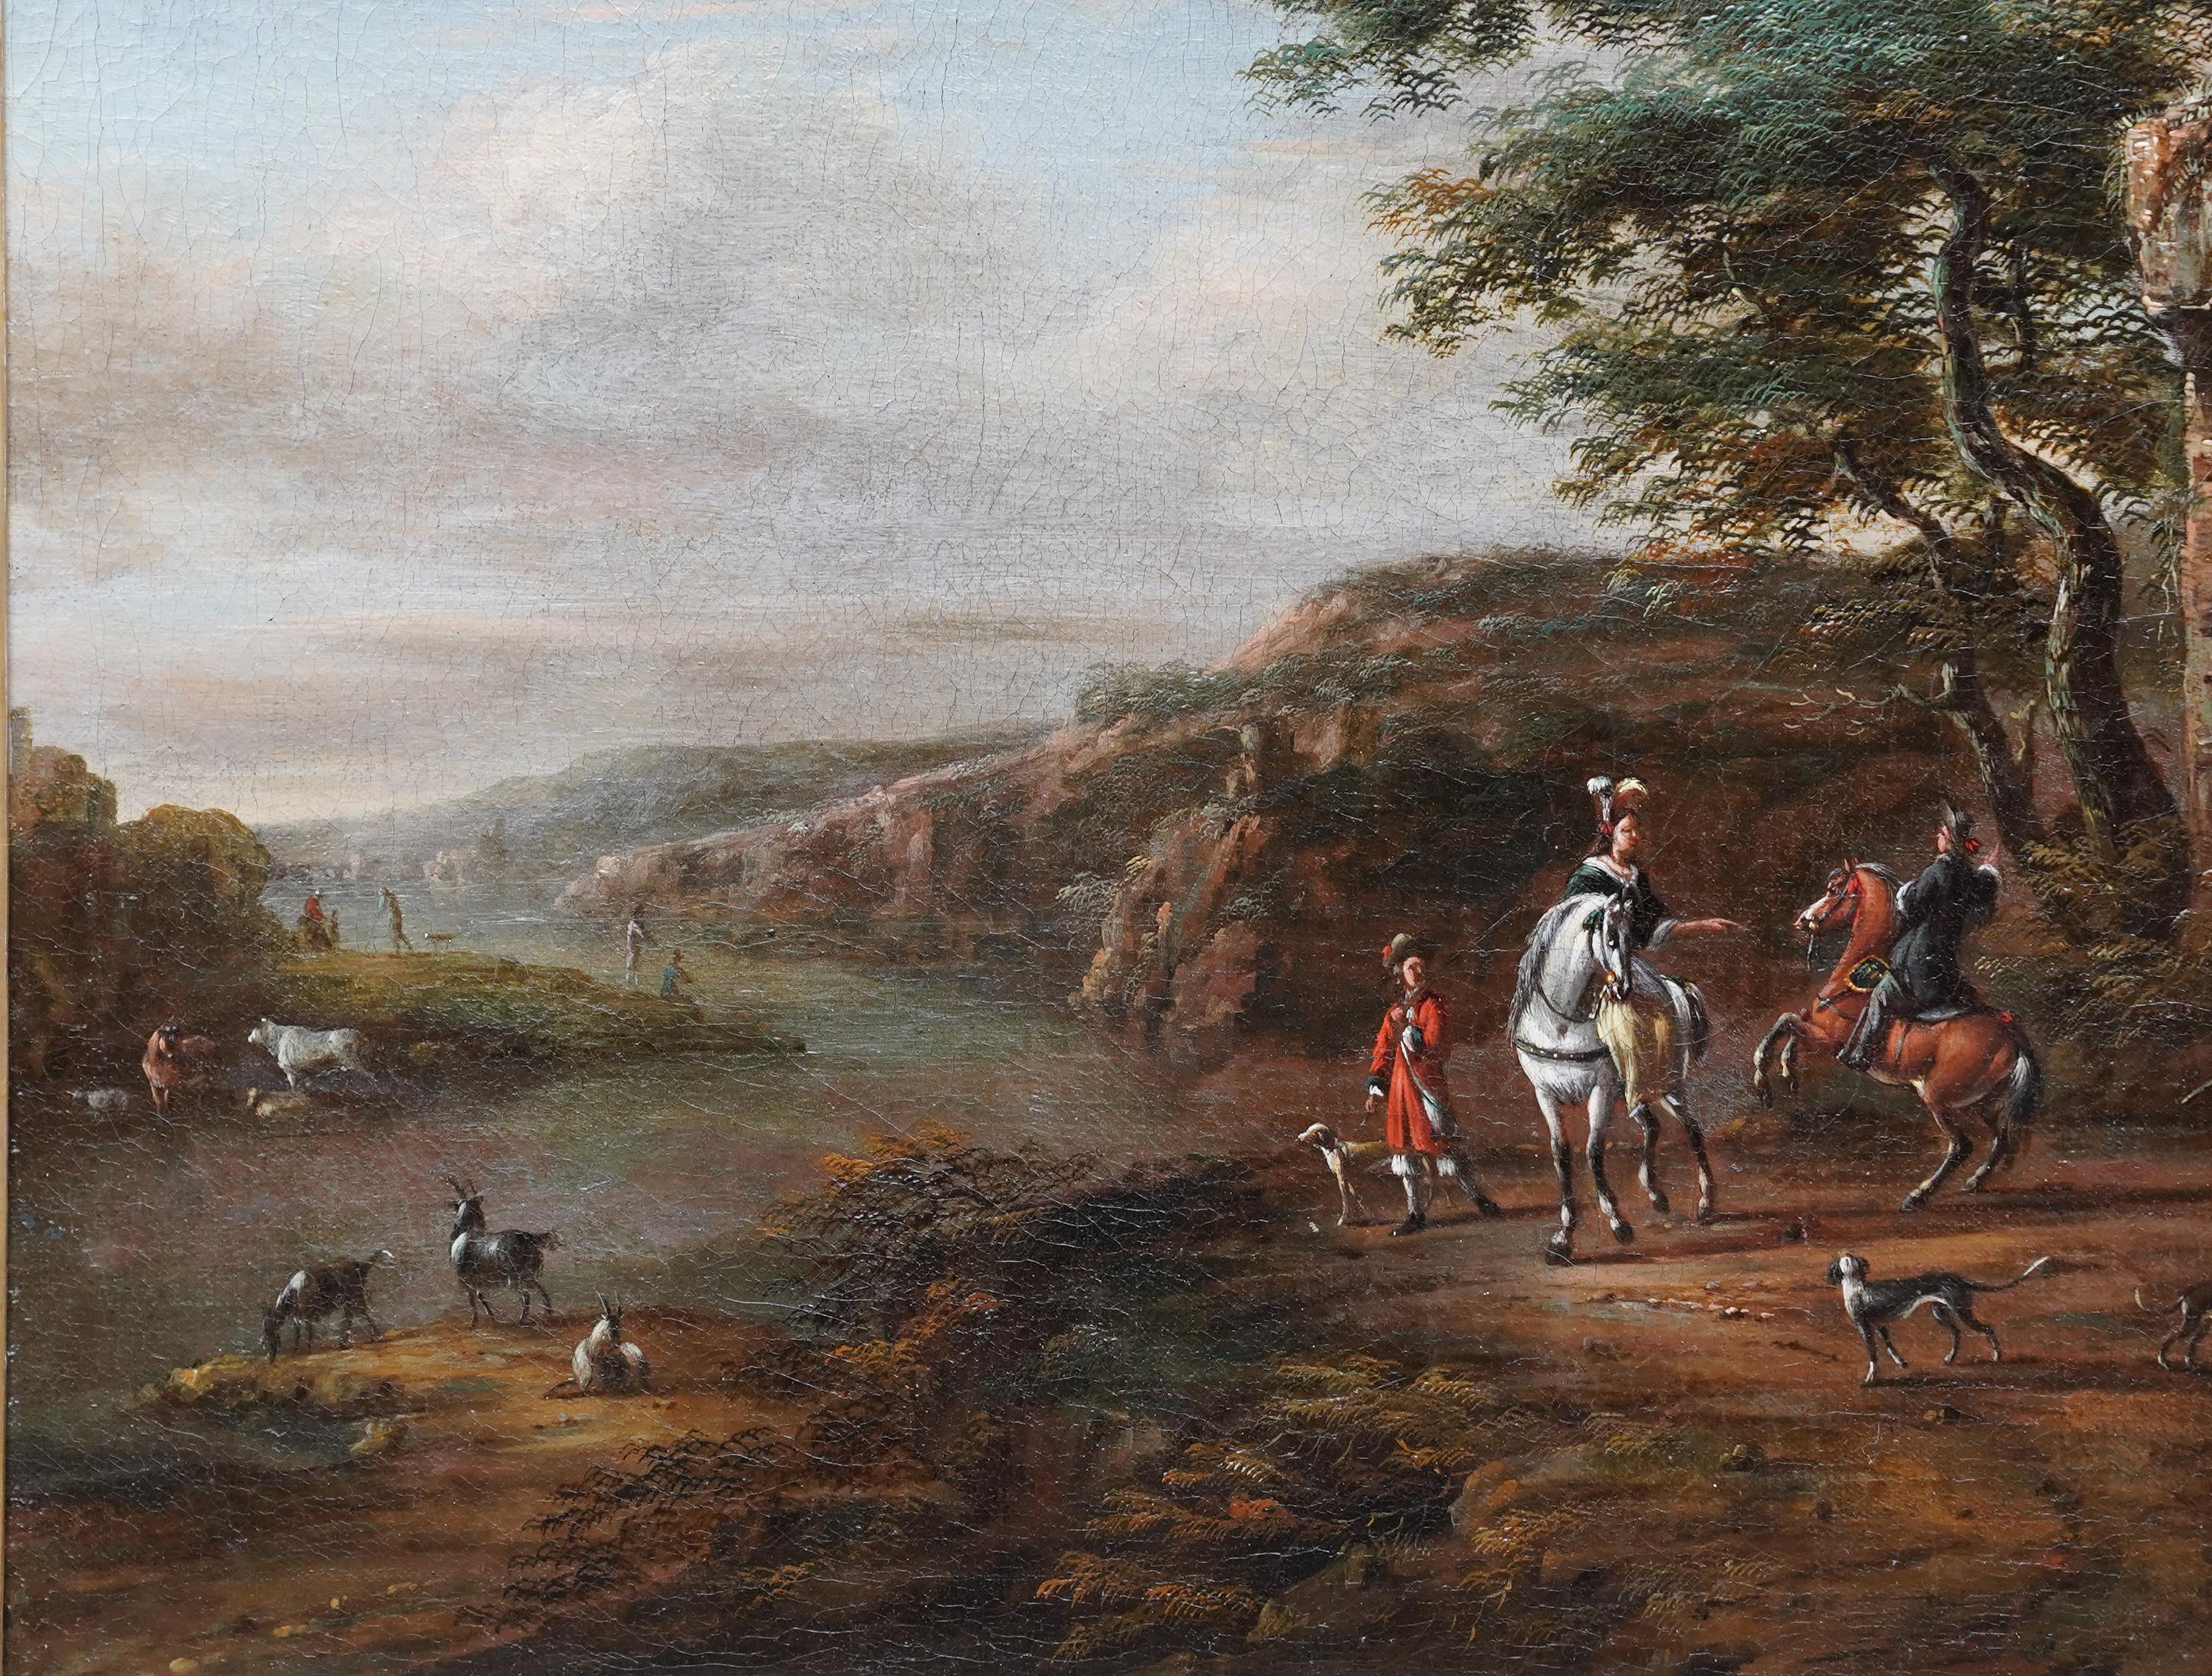 Dieses schöne niederländische Altmeister-Ölgemälde wird dem Künstler Pieter Wouwerman zugeschrieben. Um 1660 gemalt, handelt es sich um eine figurative Landschaft mit reitenden Reisenden und ihren Hunden im Vordergrund und Ruinen zu ihrer Rechten.